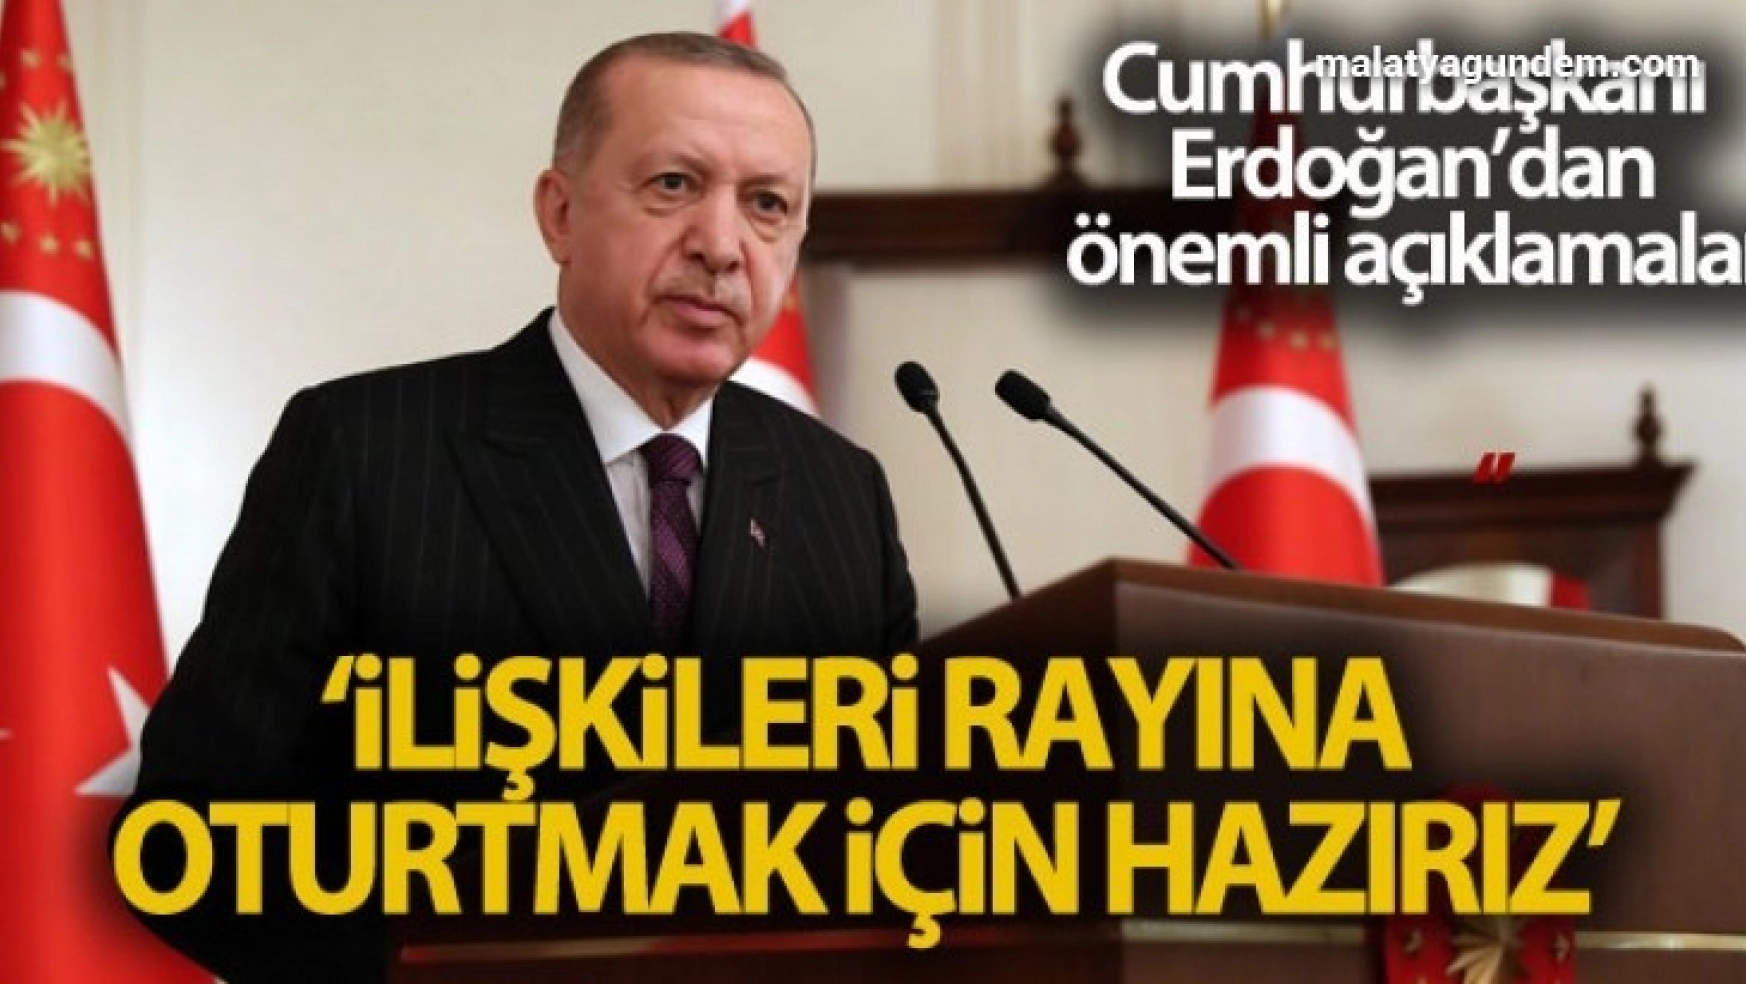 Cumhurbaşkanı Erdoğan: 'AB ile ilişkilerimizi yeniden rayına oturtmak için hazırız'